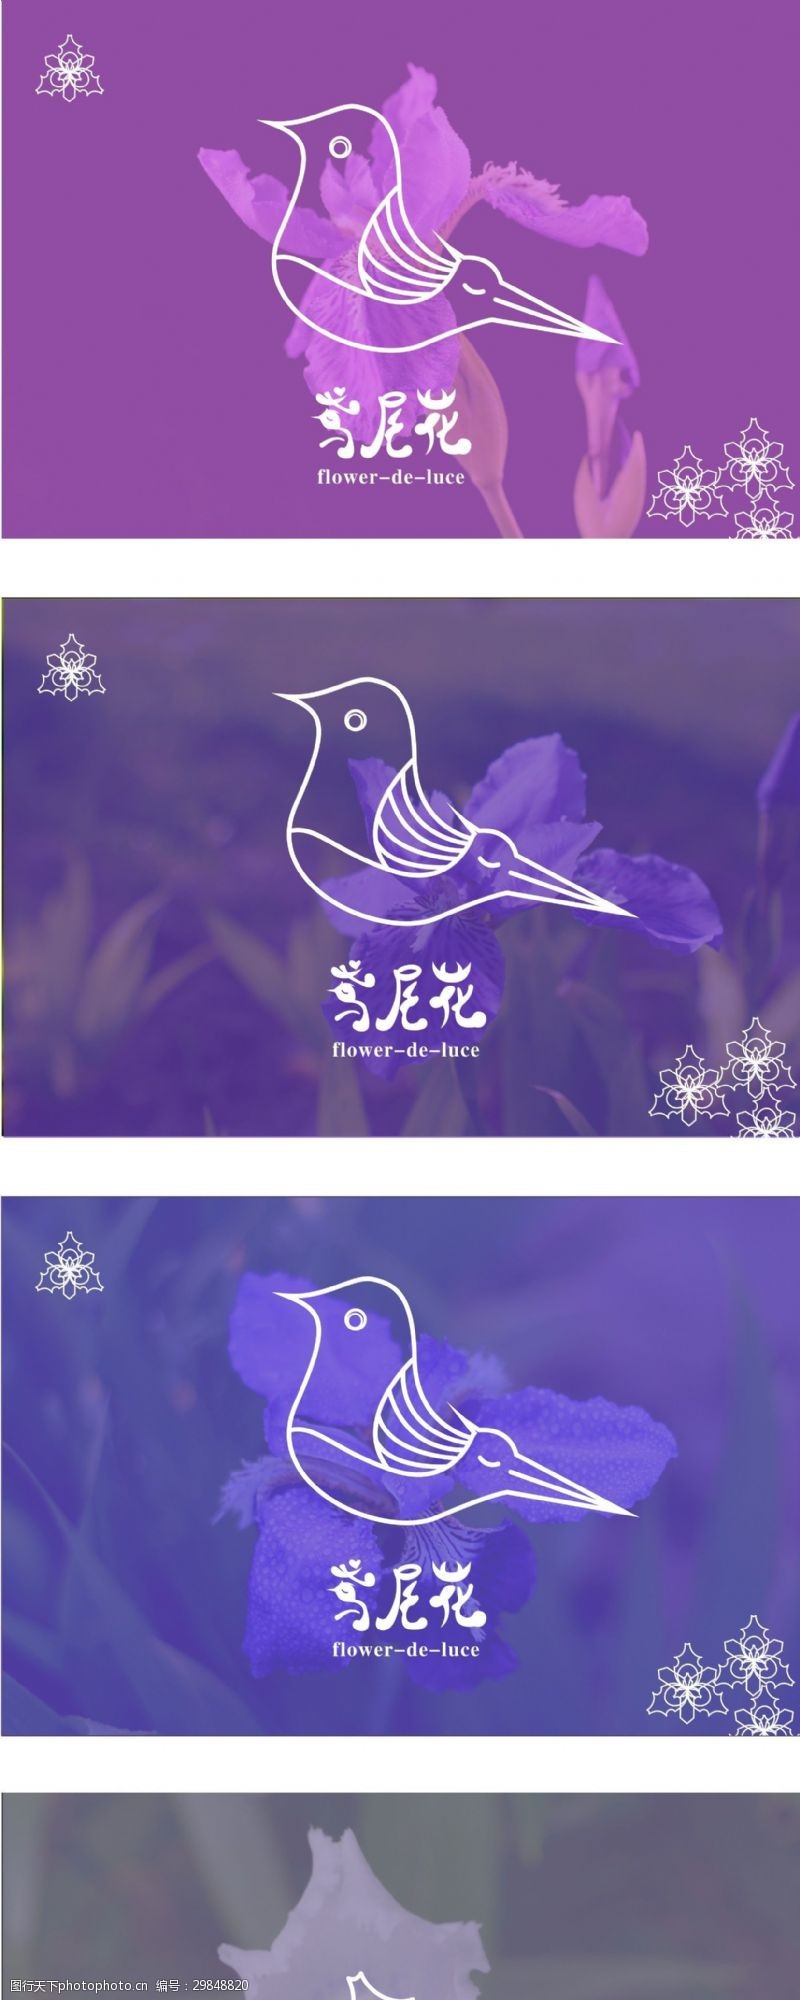 小鸟标志鸢尾花标志logo设计